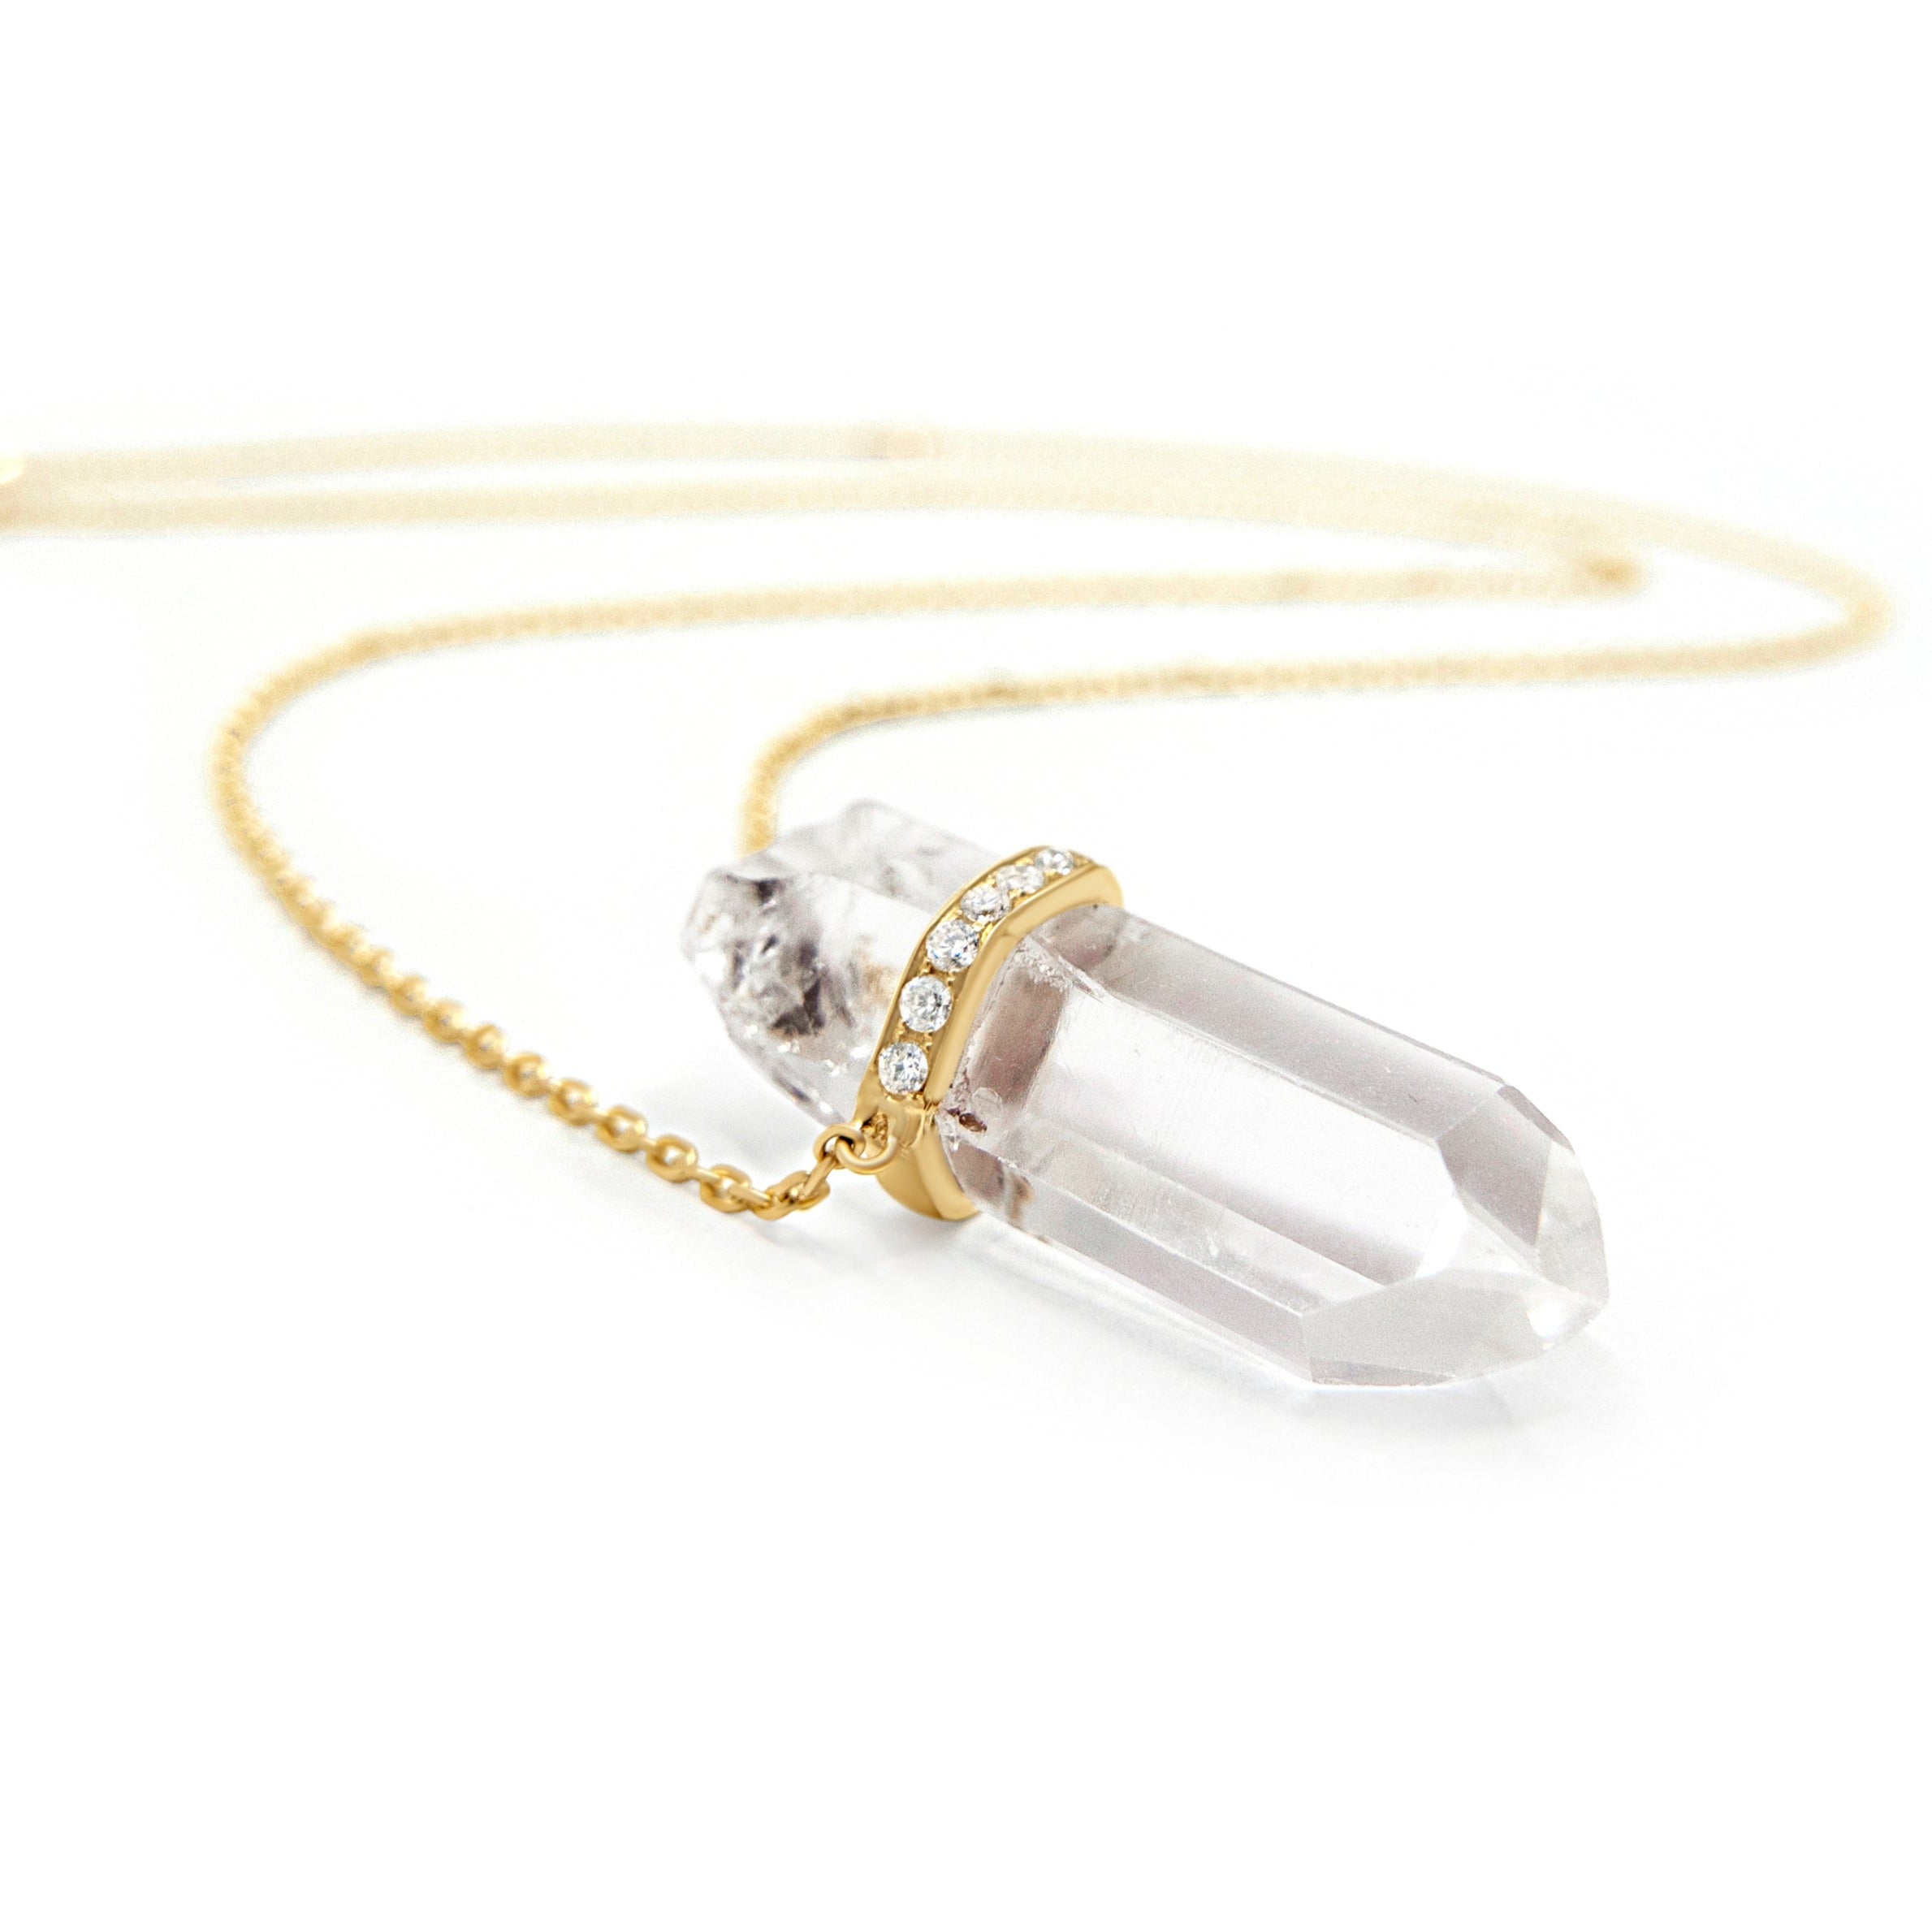 Amazon.com: Real Clear Quartz Necklaces for Women Crystal Gem Stone Quartz  Pendant Necklace 5pcs/lot : Clothing, Shoes & Jewelry